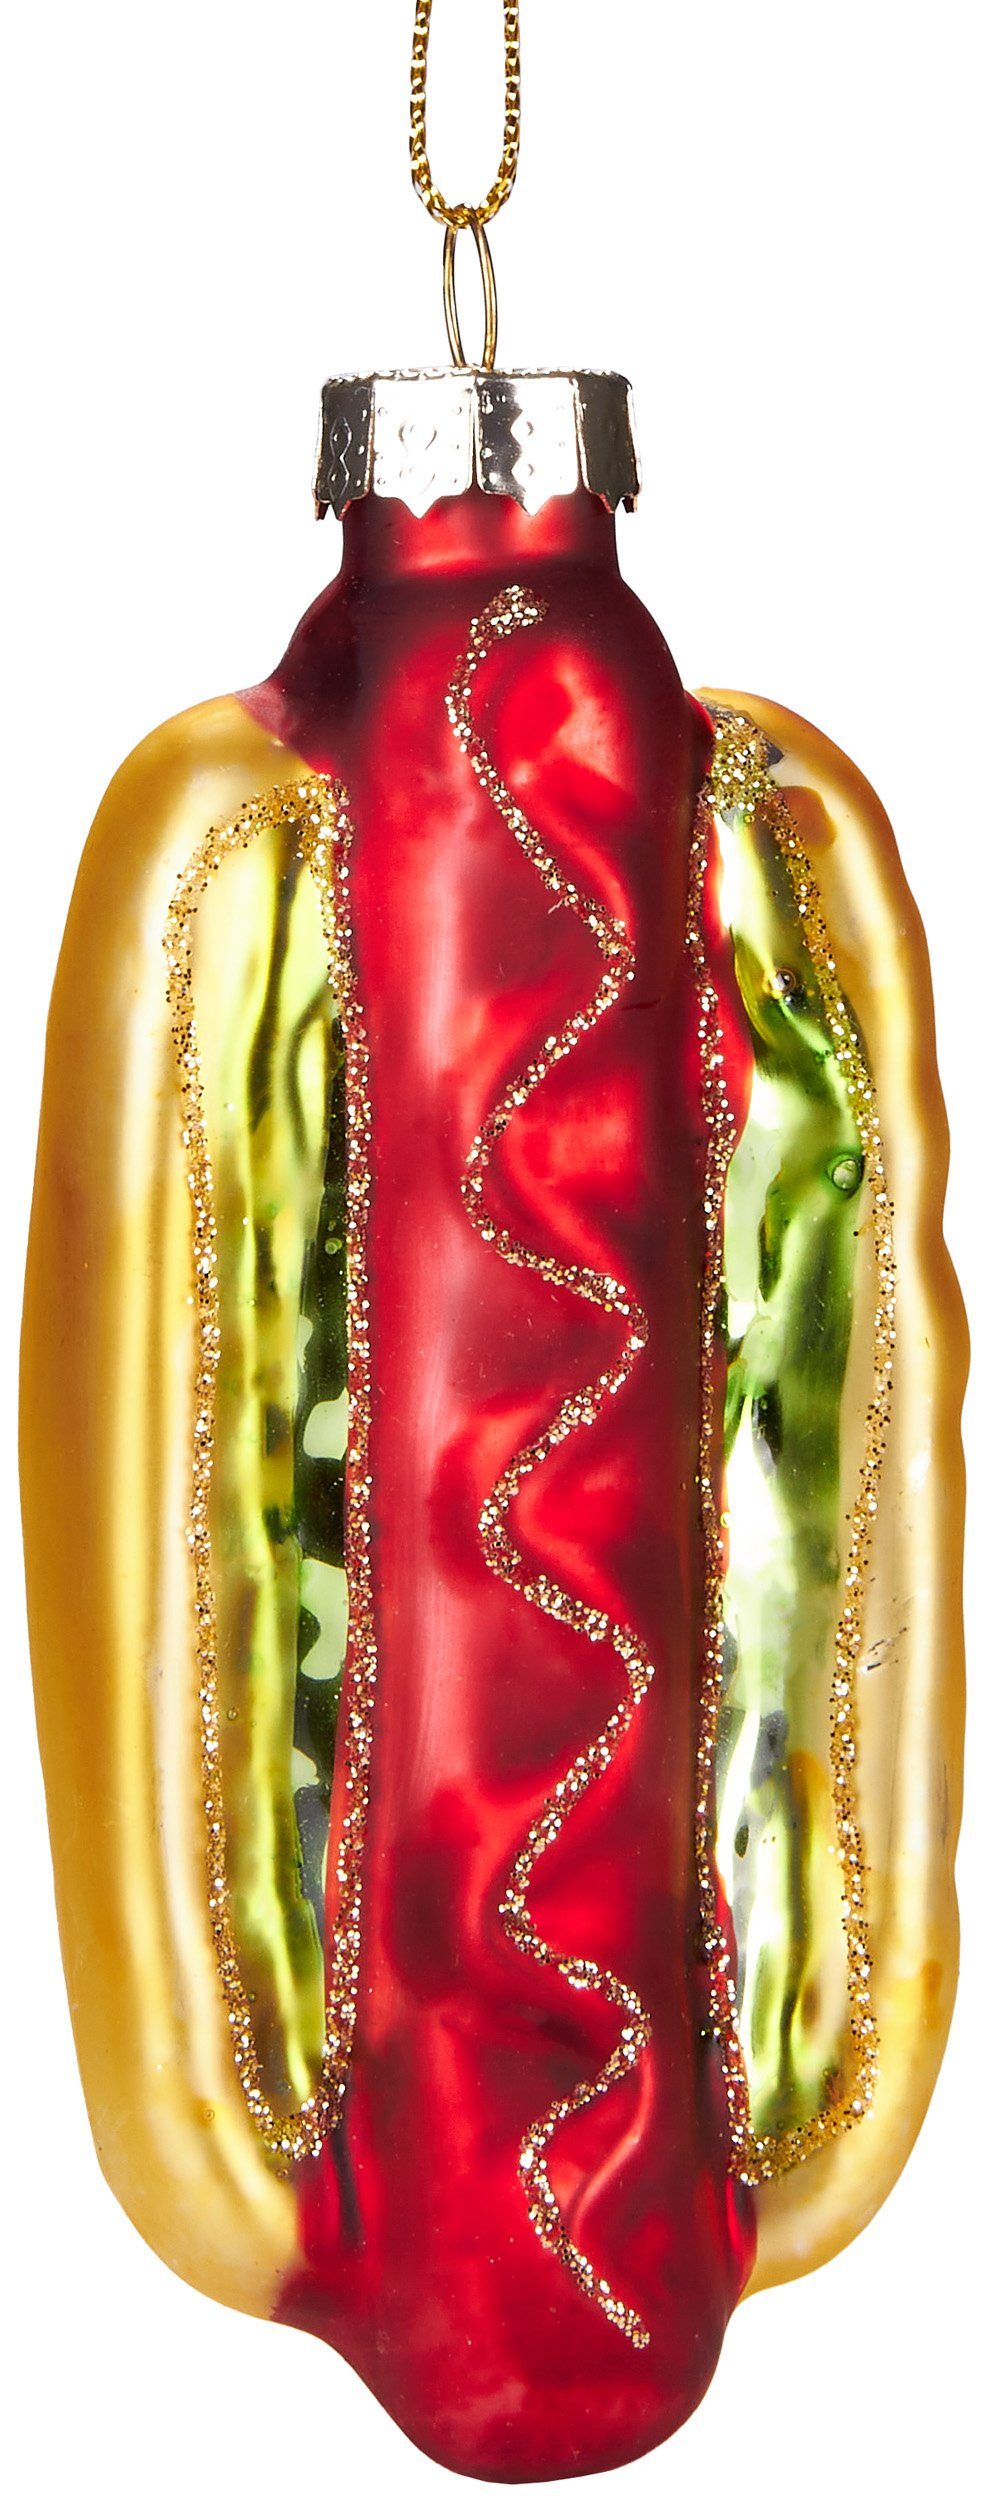 BRUBAKER Christbaumschmuck Mundgeblasene Weihnachtskugel Dänischer Hot Dog,  Fast Food Weihnachtsdekoration aus Glas, handbemalt, lustige Baumkugel - 10  cm